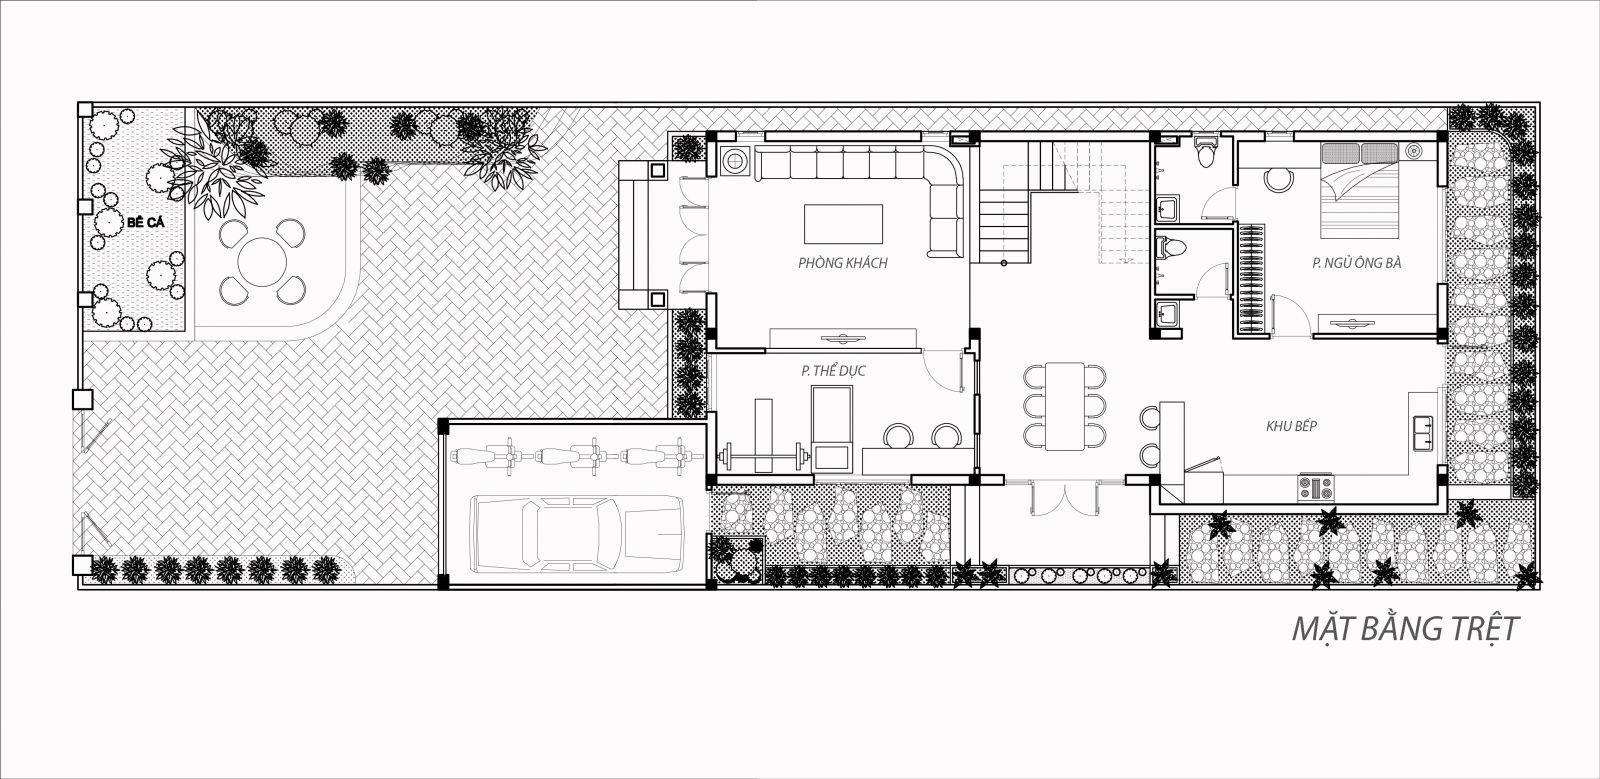 Phương pháp bố trí mặt bằng biệt thự 10x20 tối ưu nhất được cung cấp bởi  kiến trúc sư TIN904039  Kiến trúc Angcovat